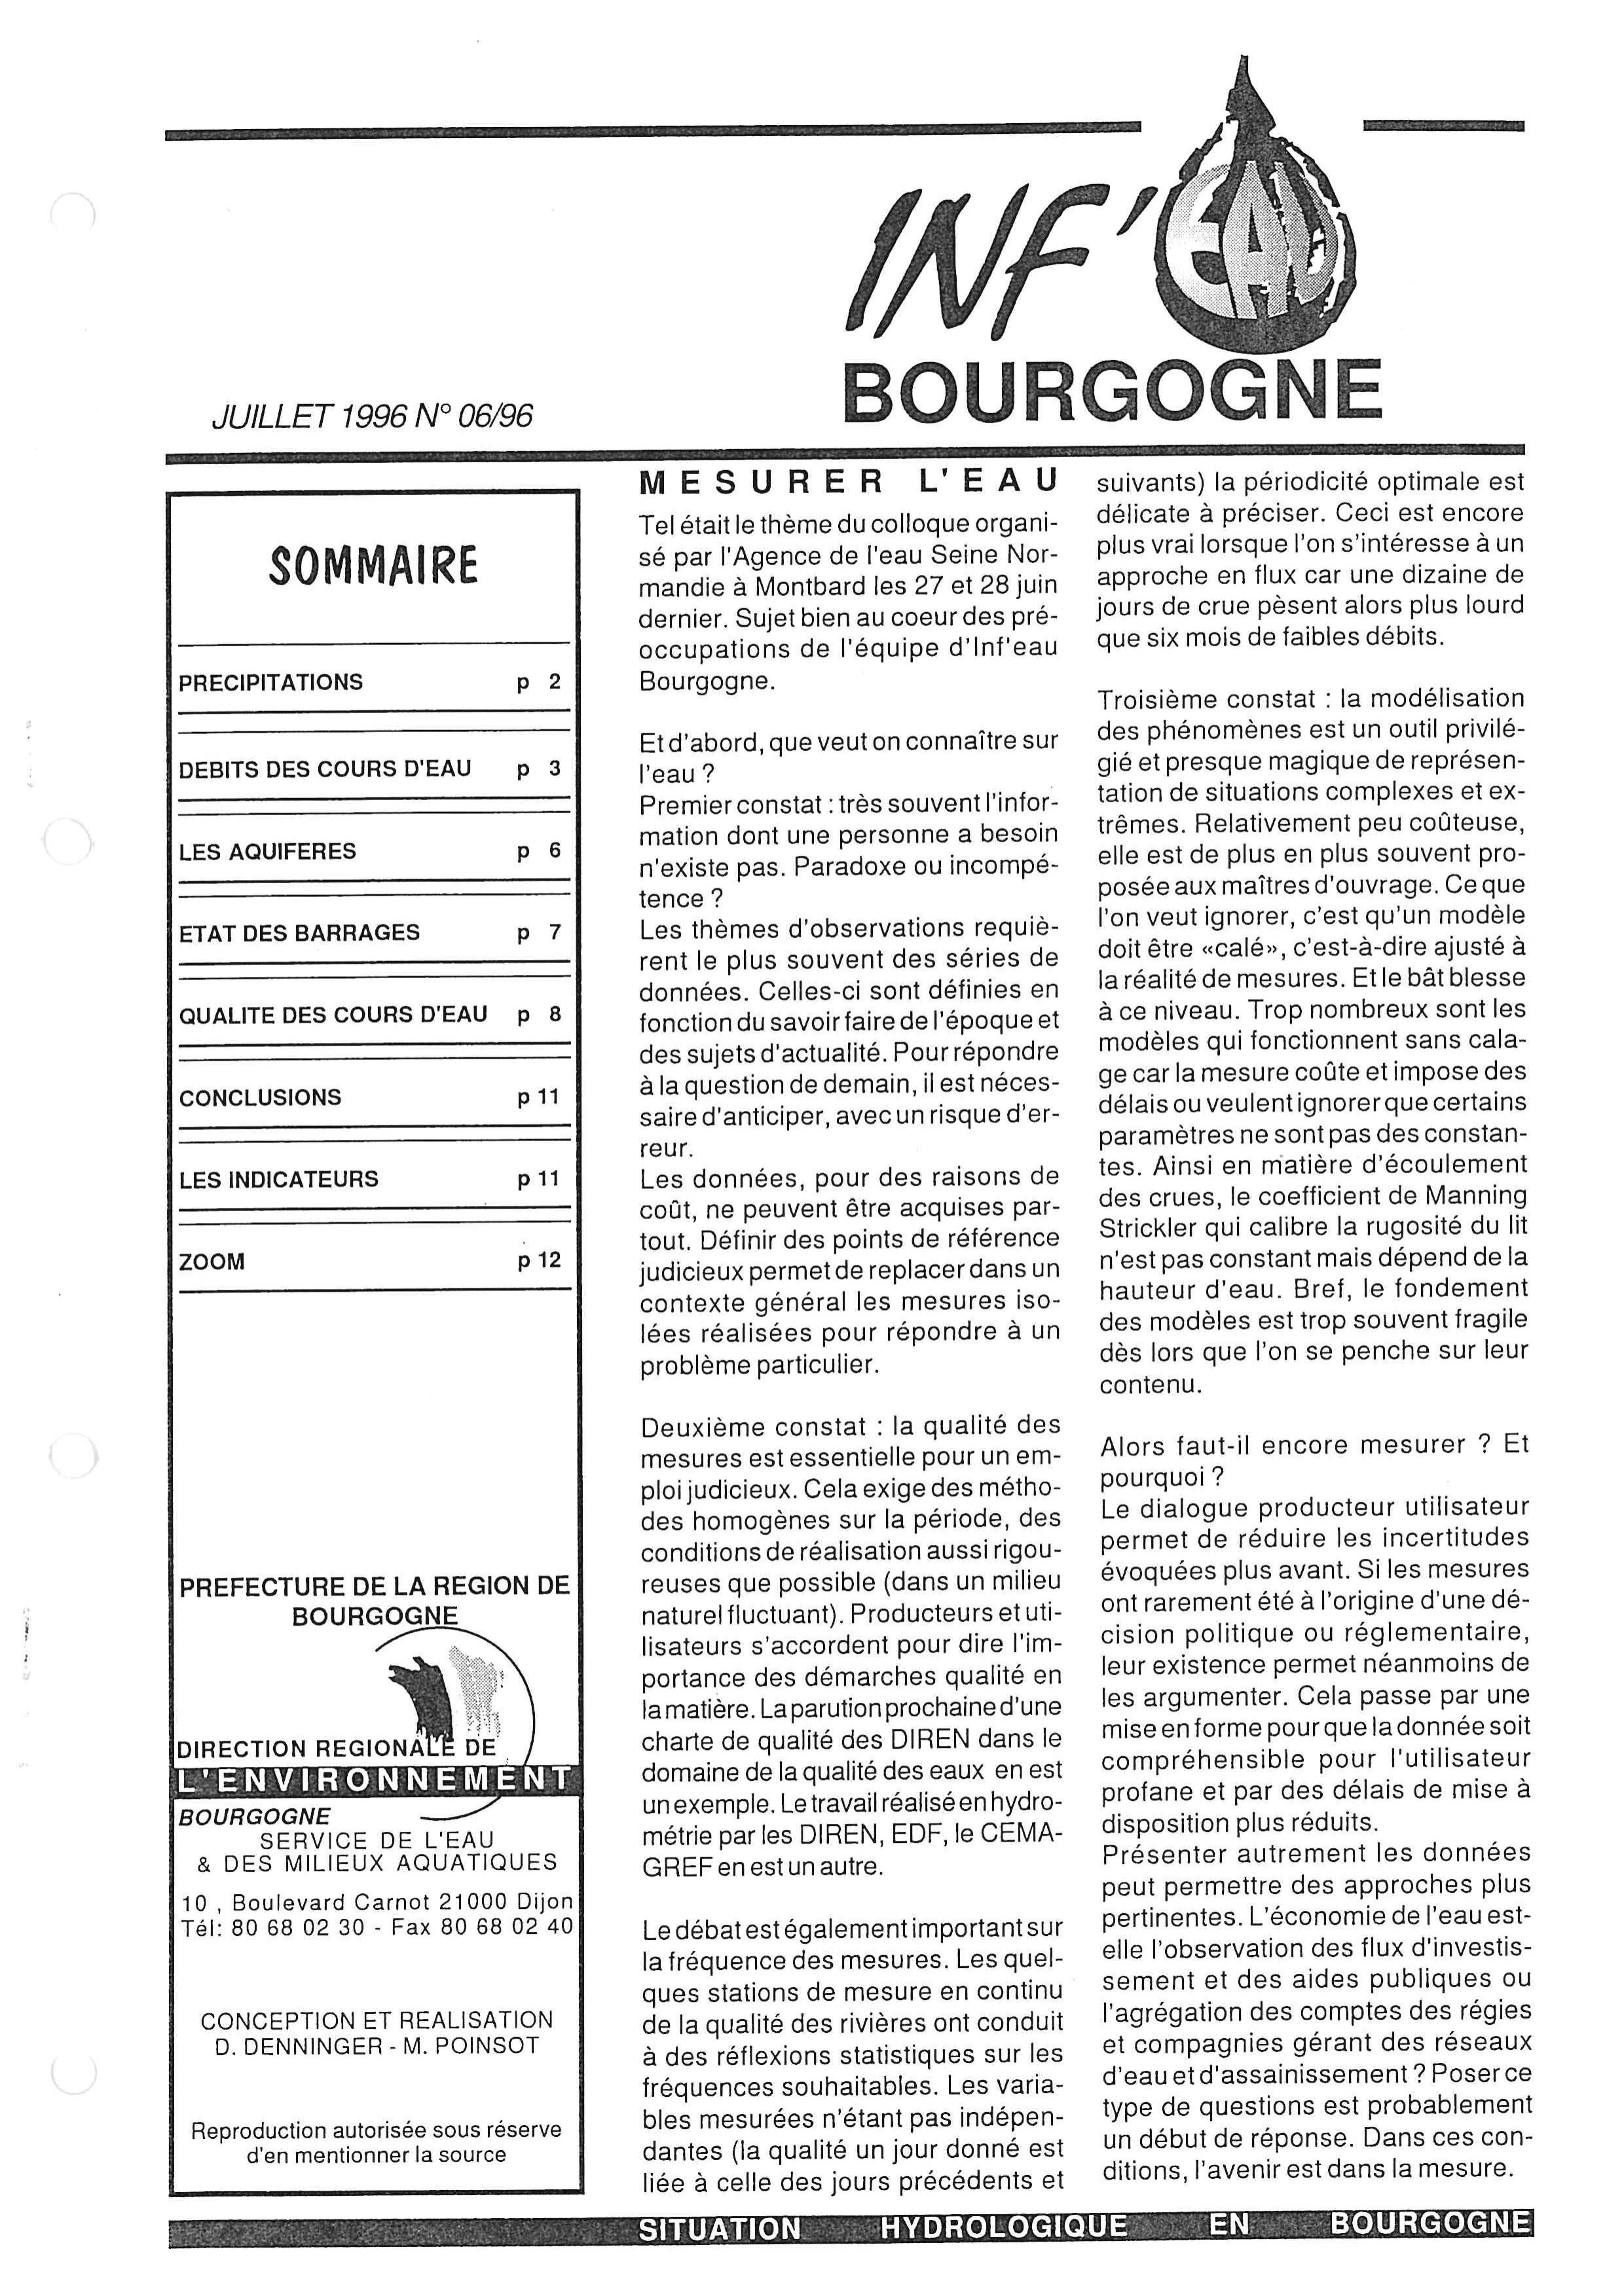 Bulletin hydrologique du mois de juin 1996